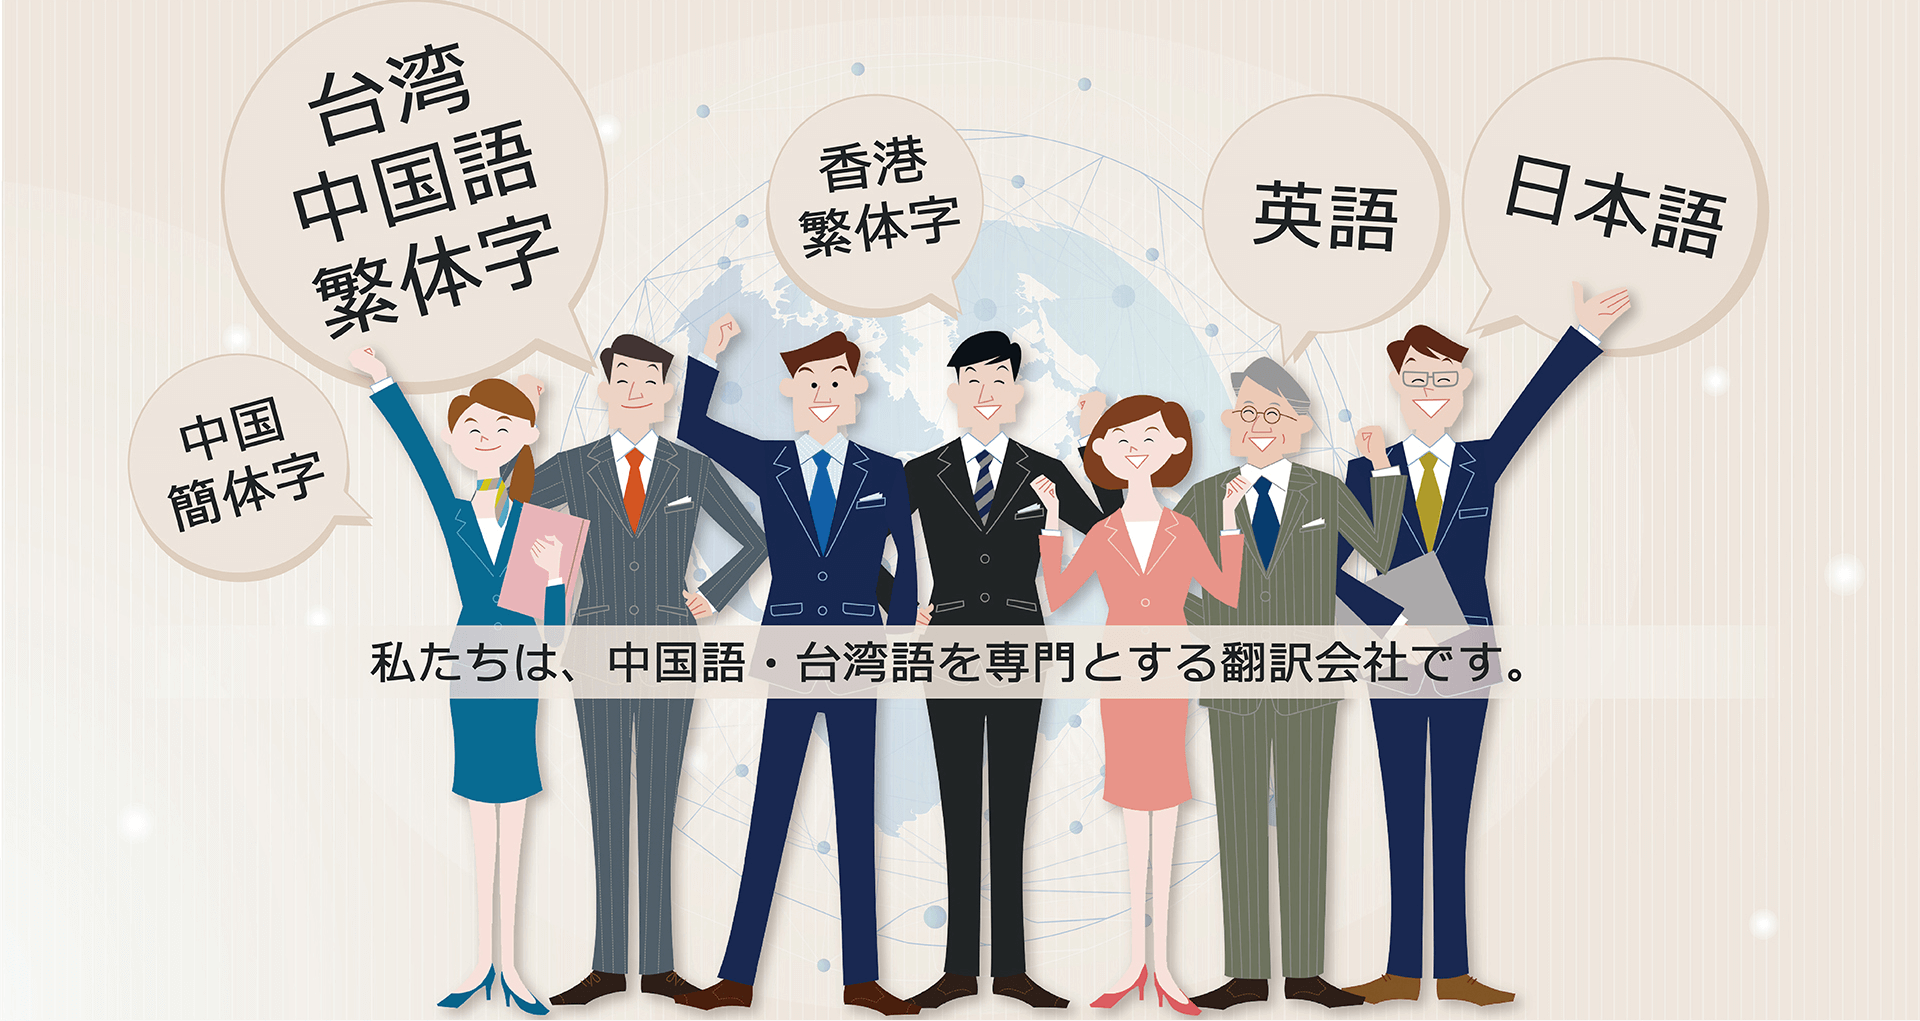 台湾中国語繁体字翻訳 Mie Translation Services ミエトランスレーションサービス 翻訳会社 Taipei City